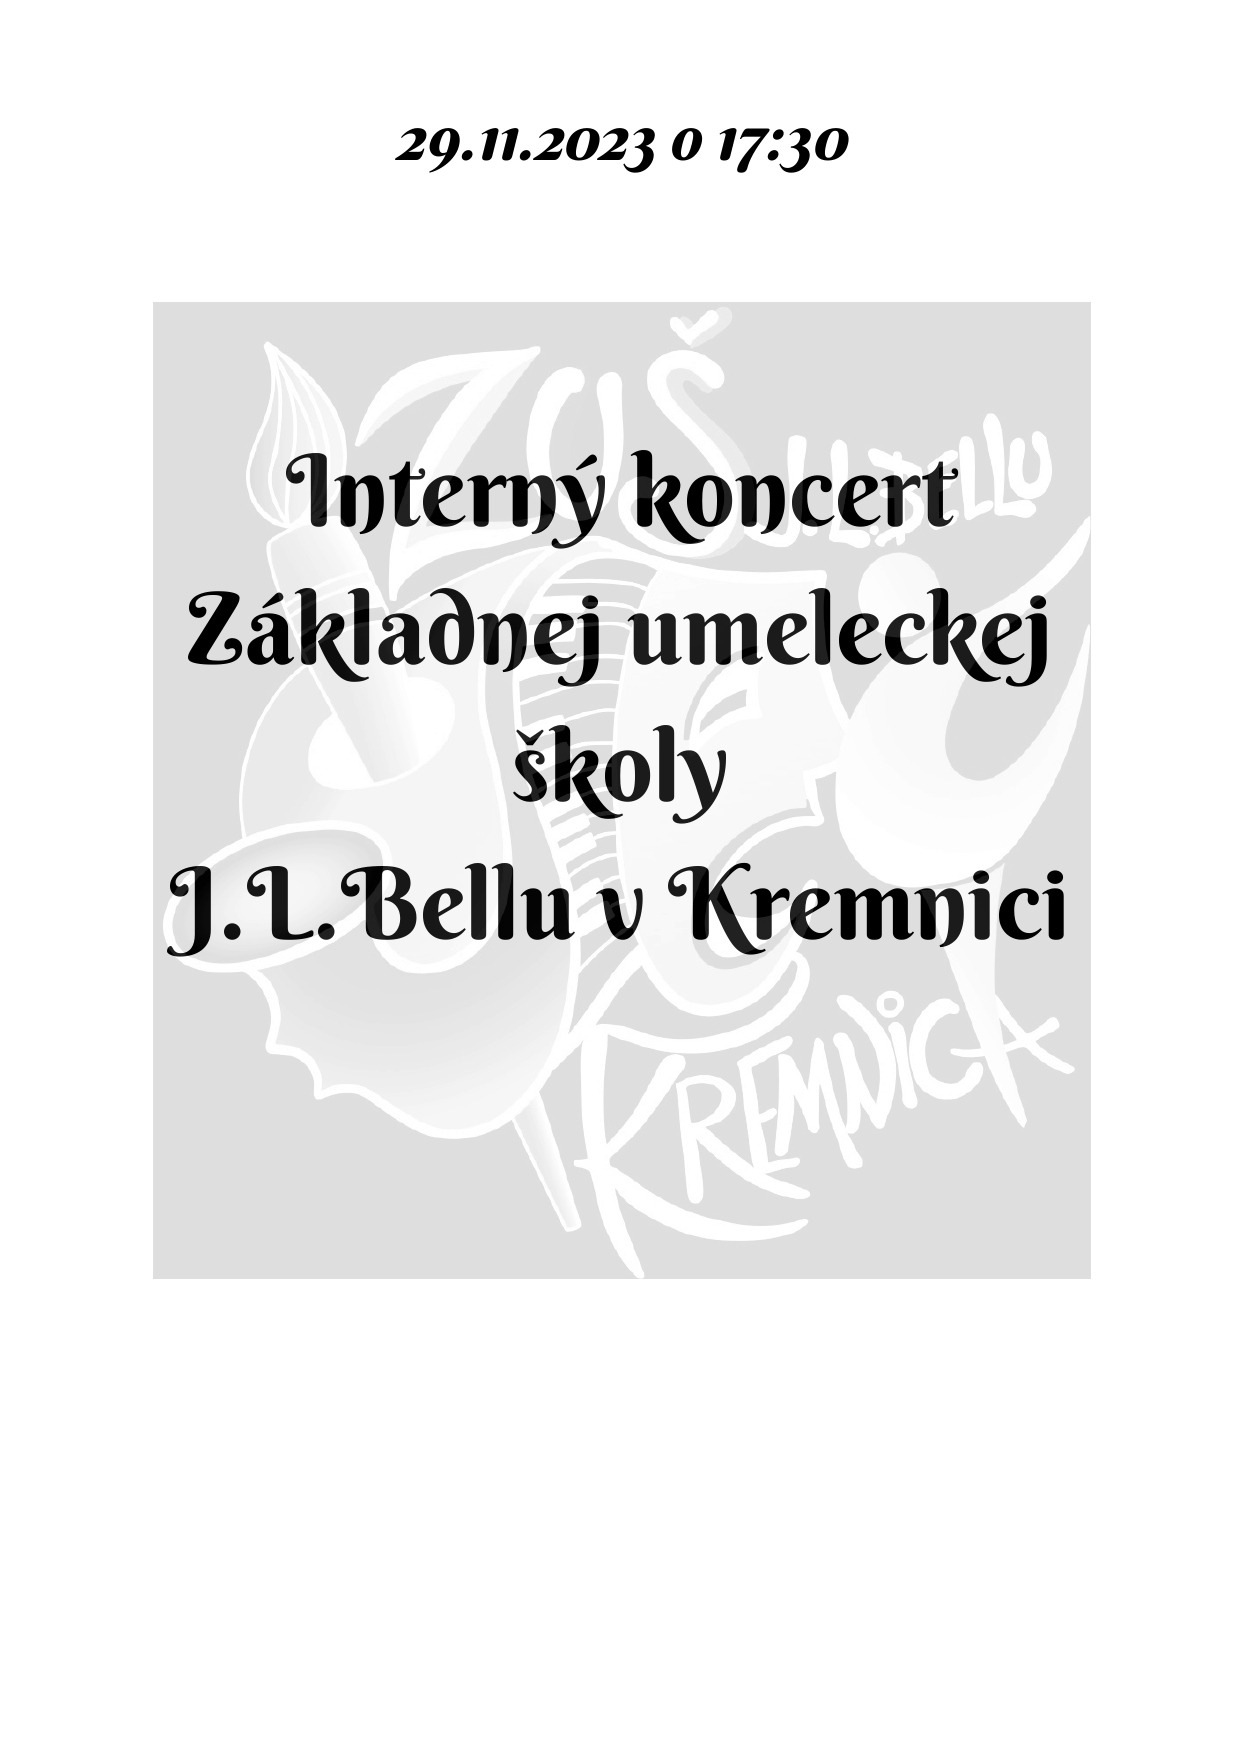 Pozvánka na interný koncert dnes 29.11. o 17:30 v sále ZUŠ, alebo online - Obrázok 1